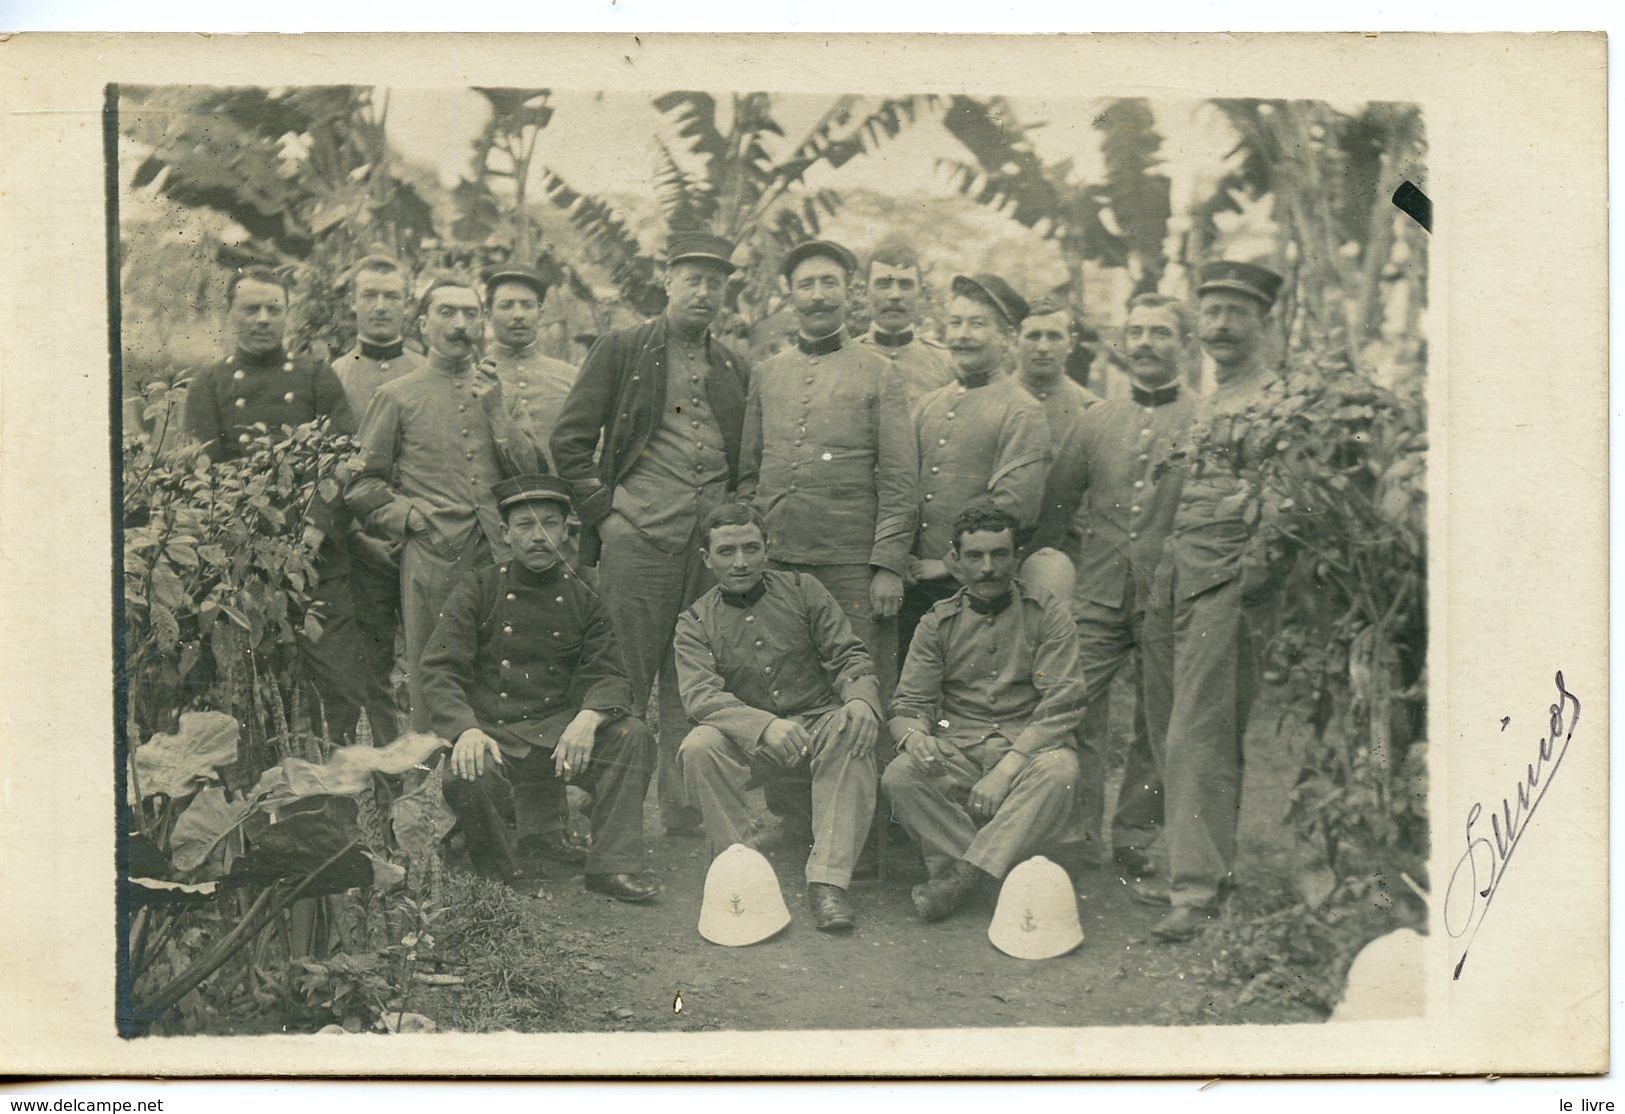 VIET-NAM HANO. CPA PHOTO GROUPE DE MILITAIRES CASQUES COLONIAUX 1910